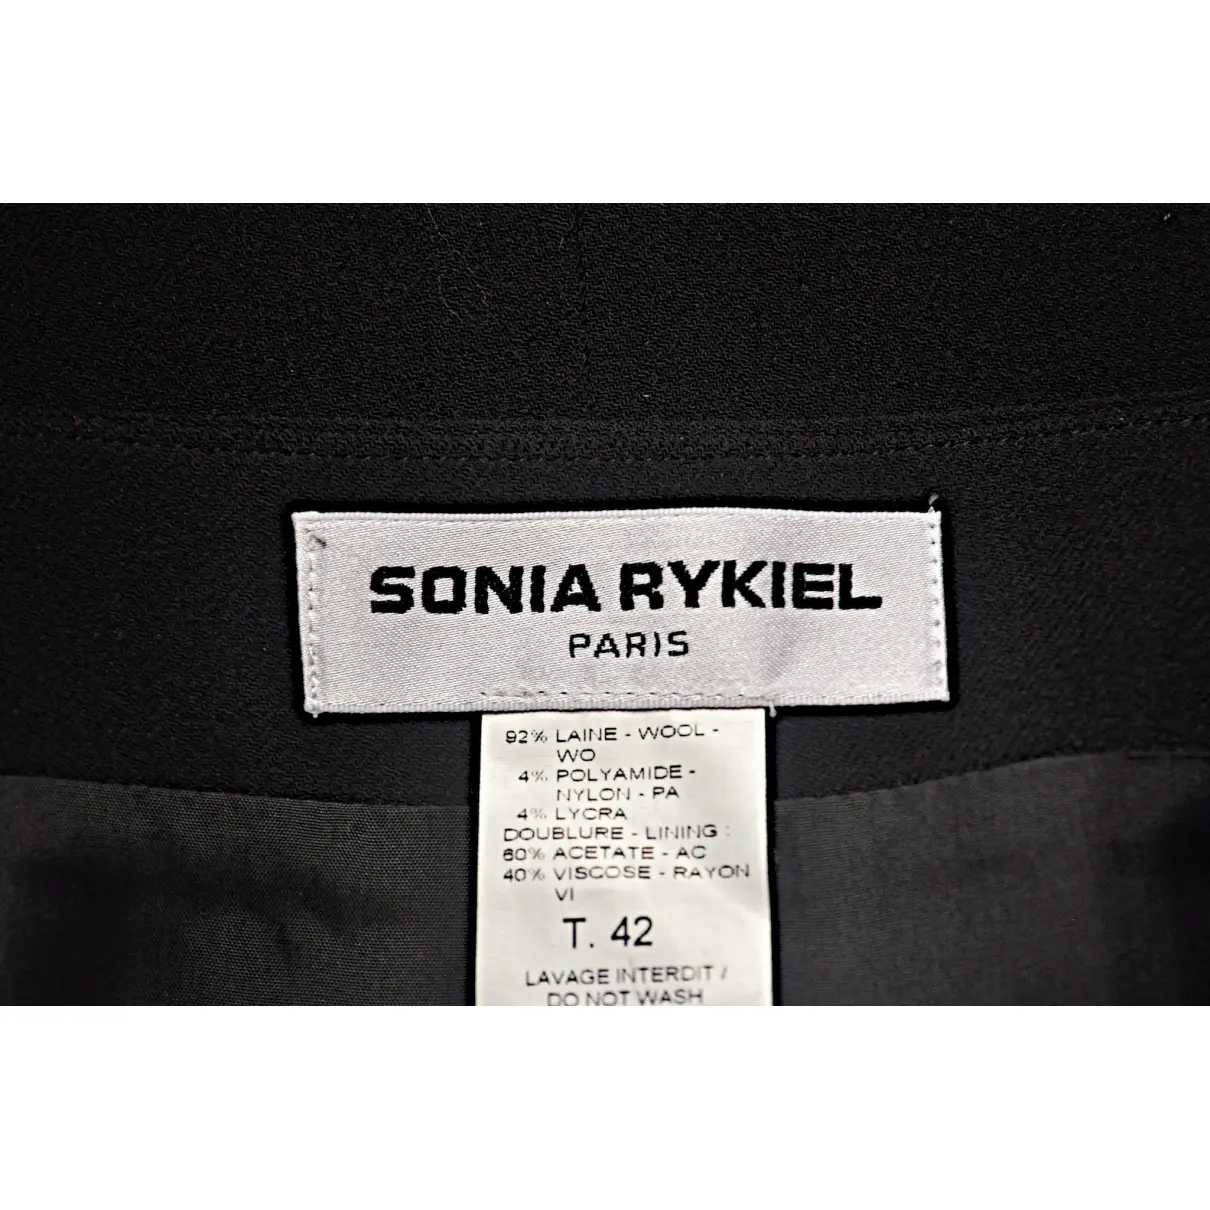 Wool mid-length skirt Sonia Rykiel - Vintage